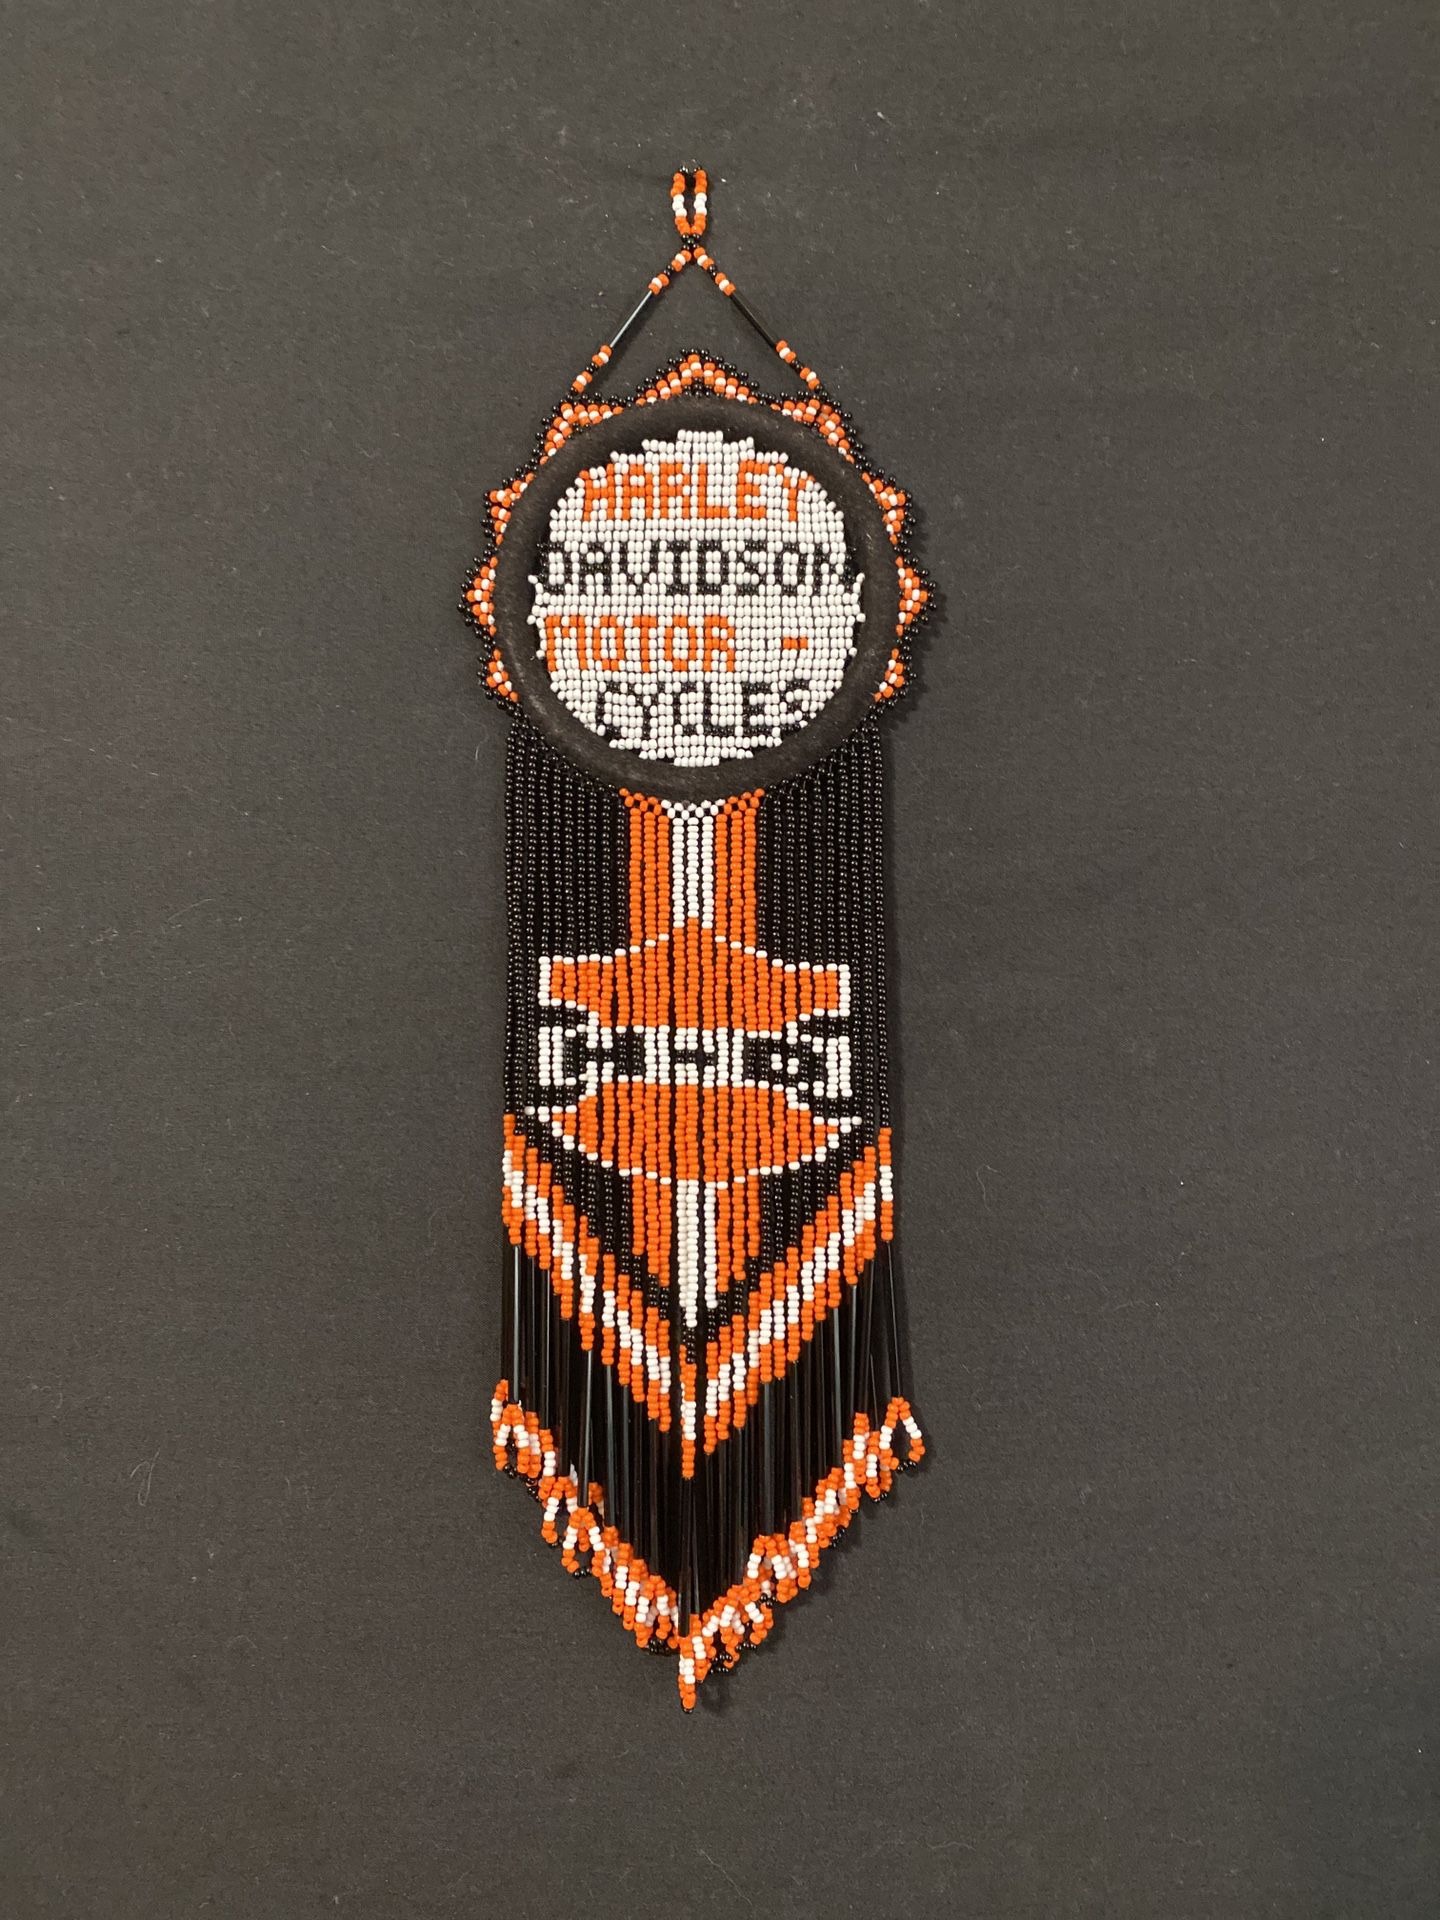 Harley Davidson dreamcatcher